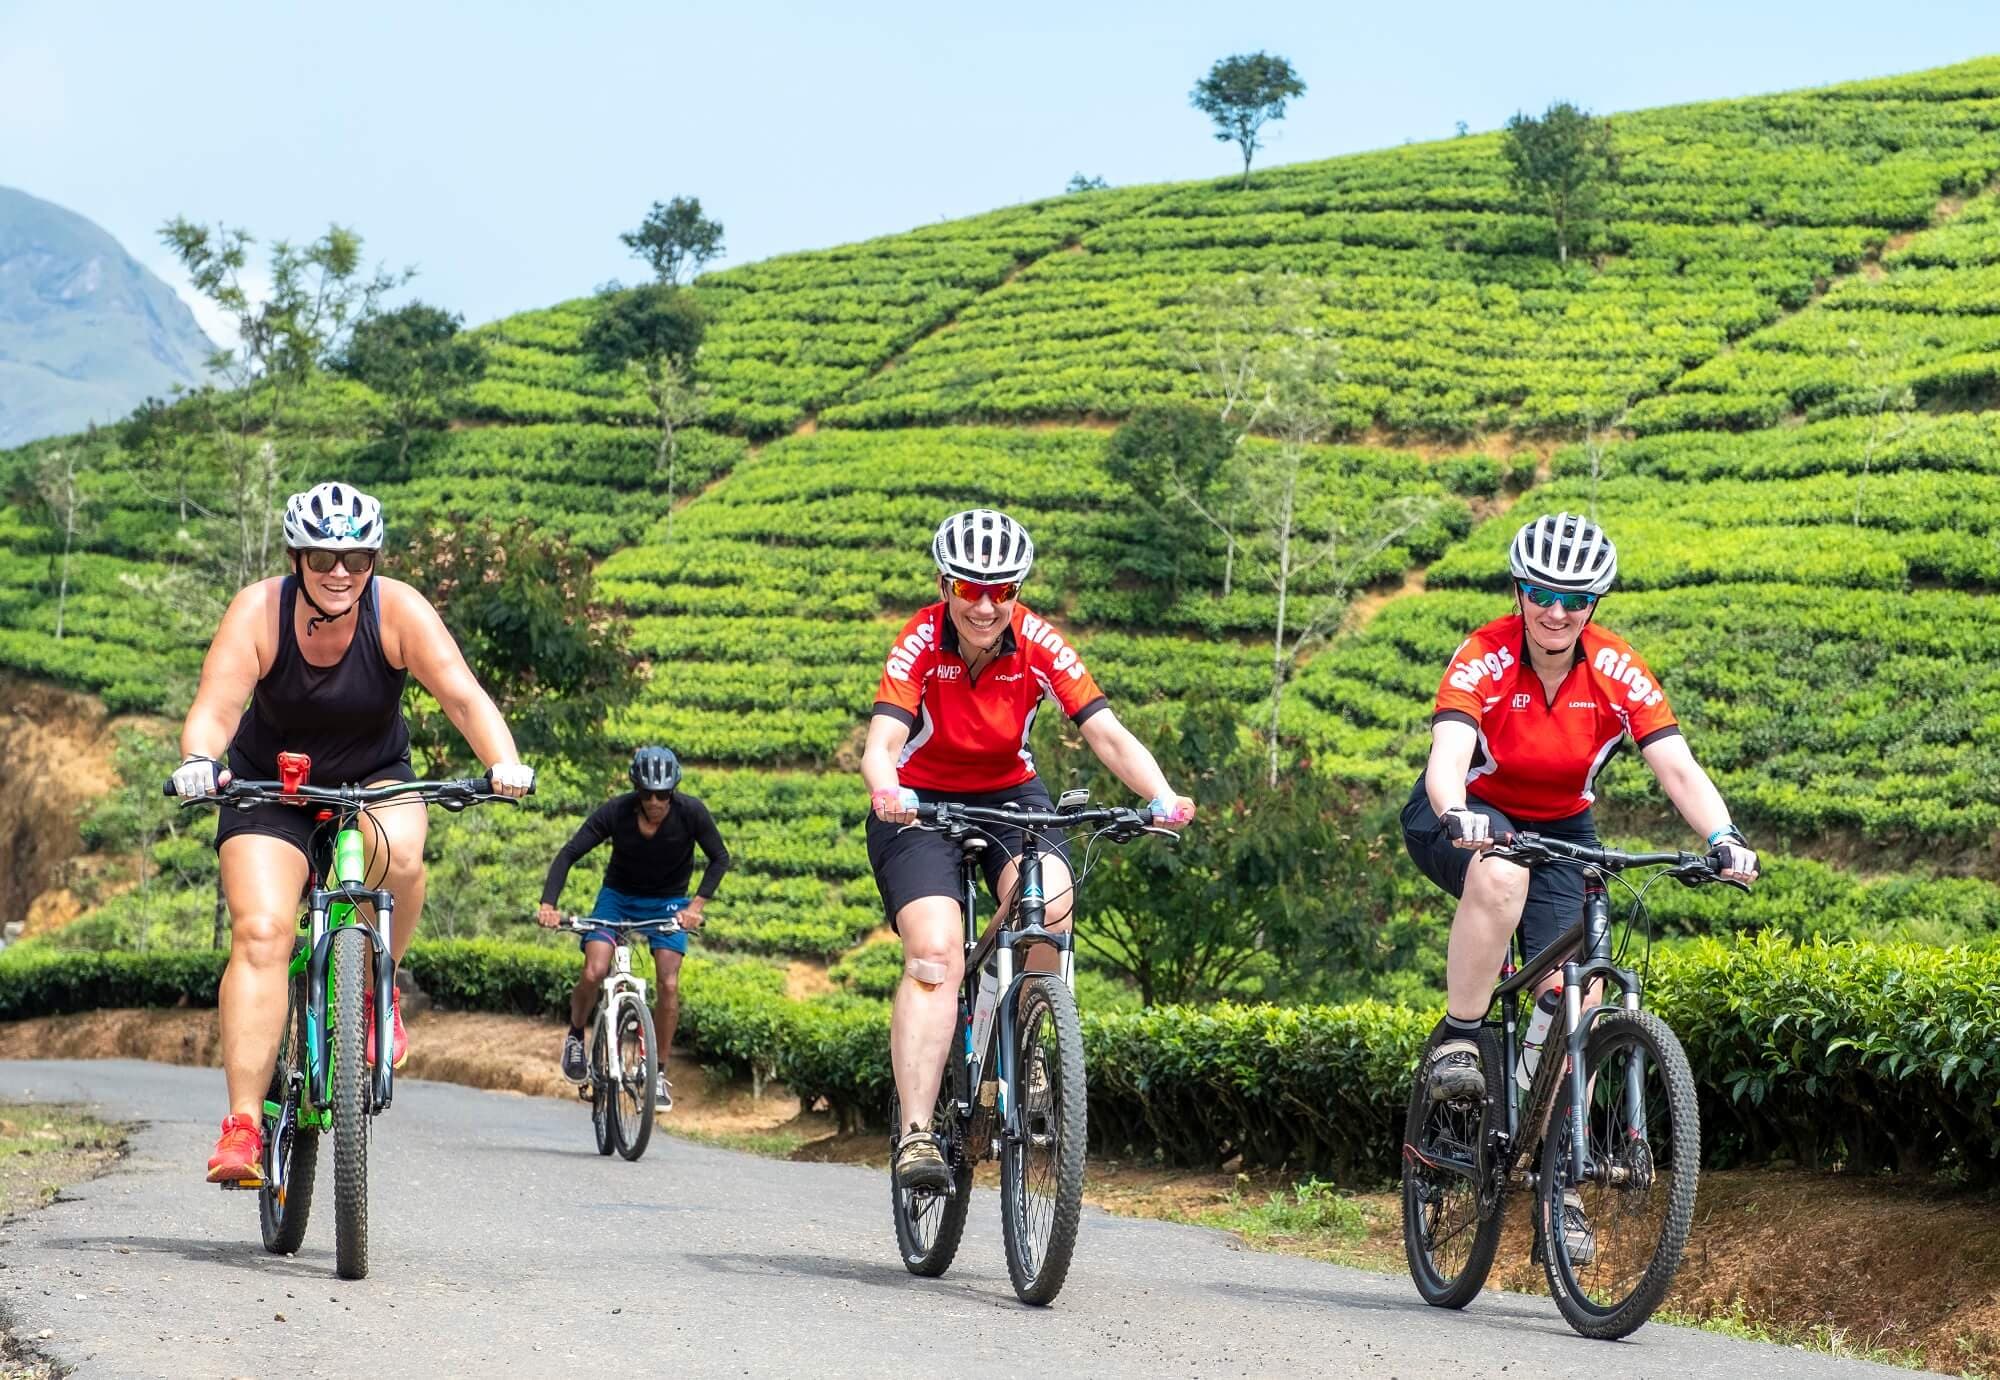 صورة لركوب الدراجات في منطقة حديقة الشاي ذات المناظر الخلابة في نوارا إليا ، سريلانكا